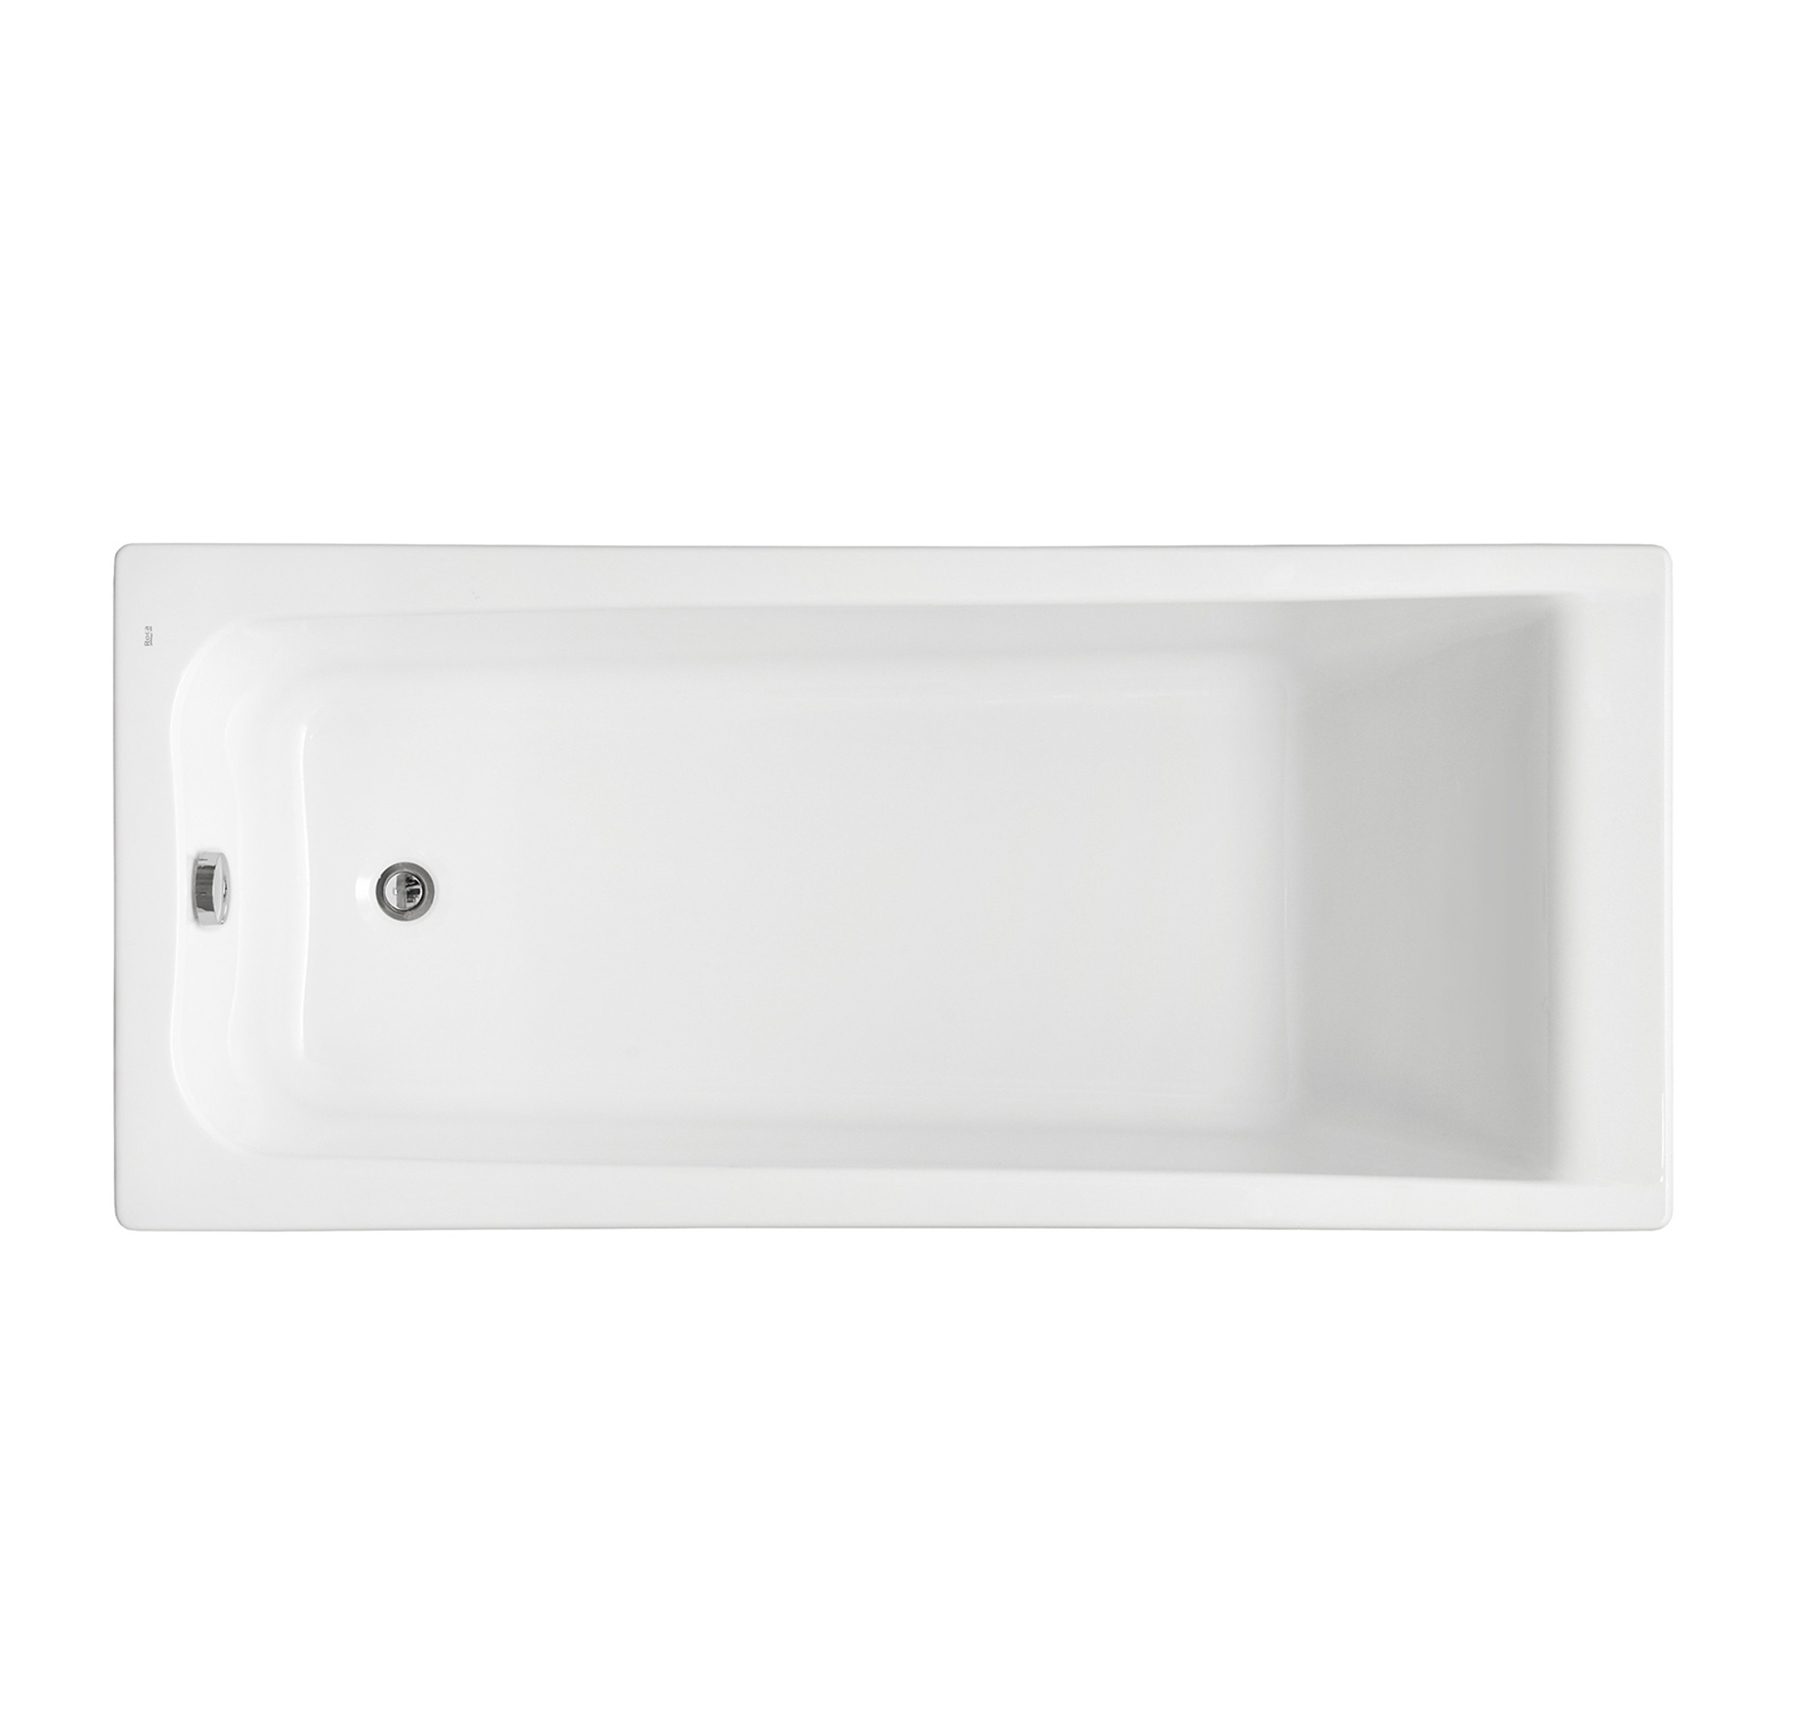 Акриловая ванна Roca Elba 150x75, цвет белый